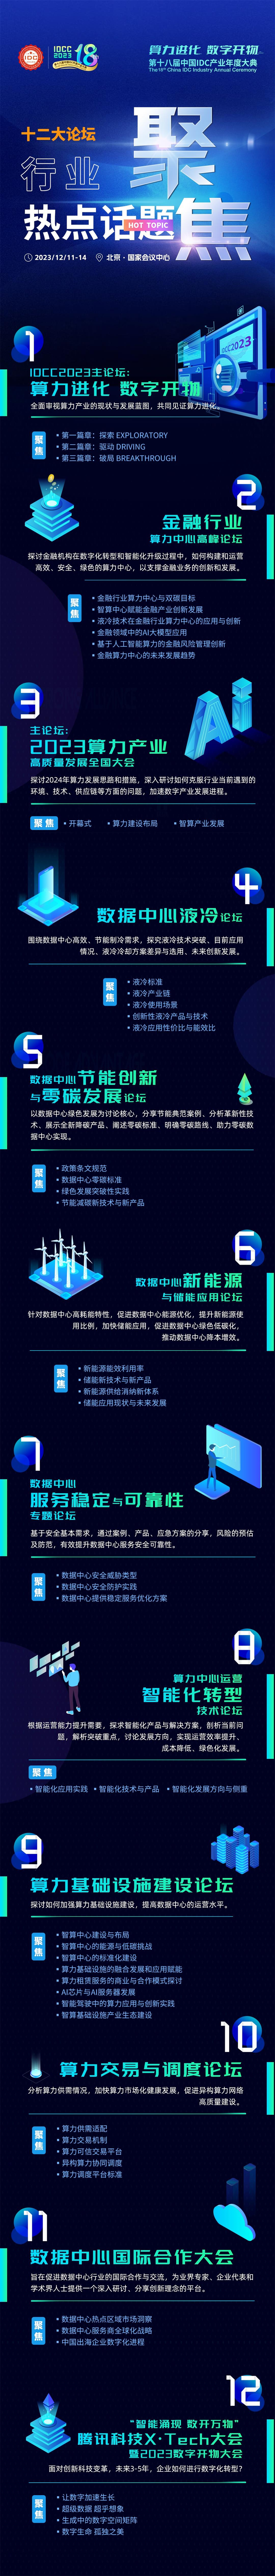 第十八届中国IDC产业年度大典